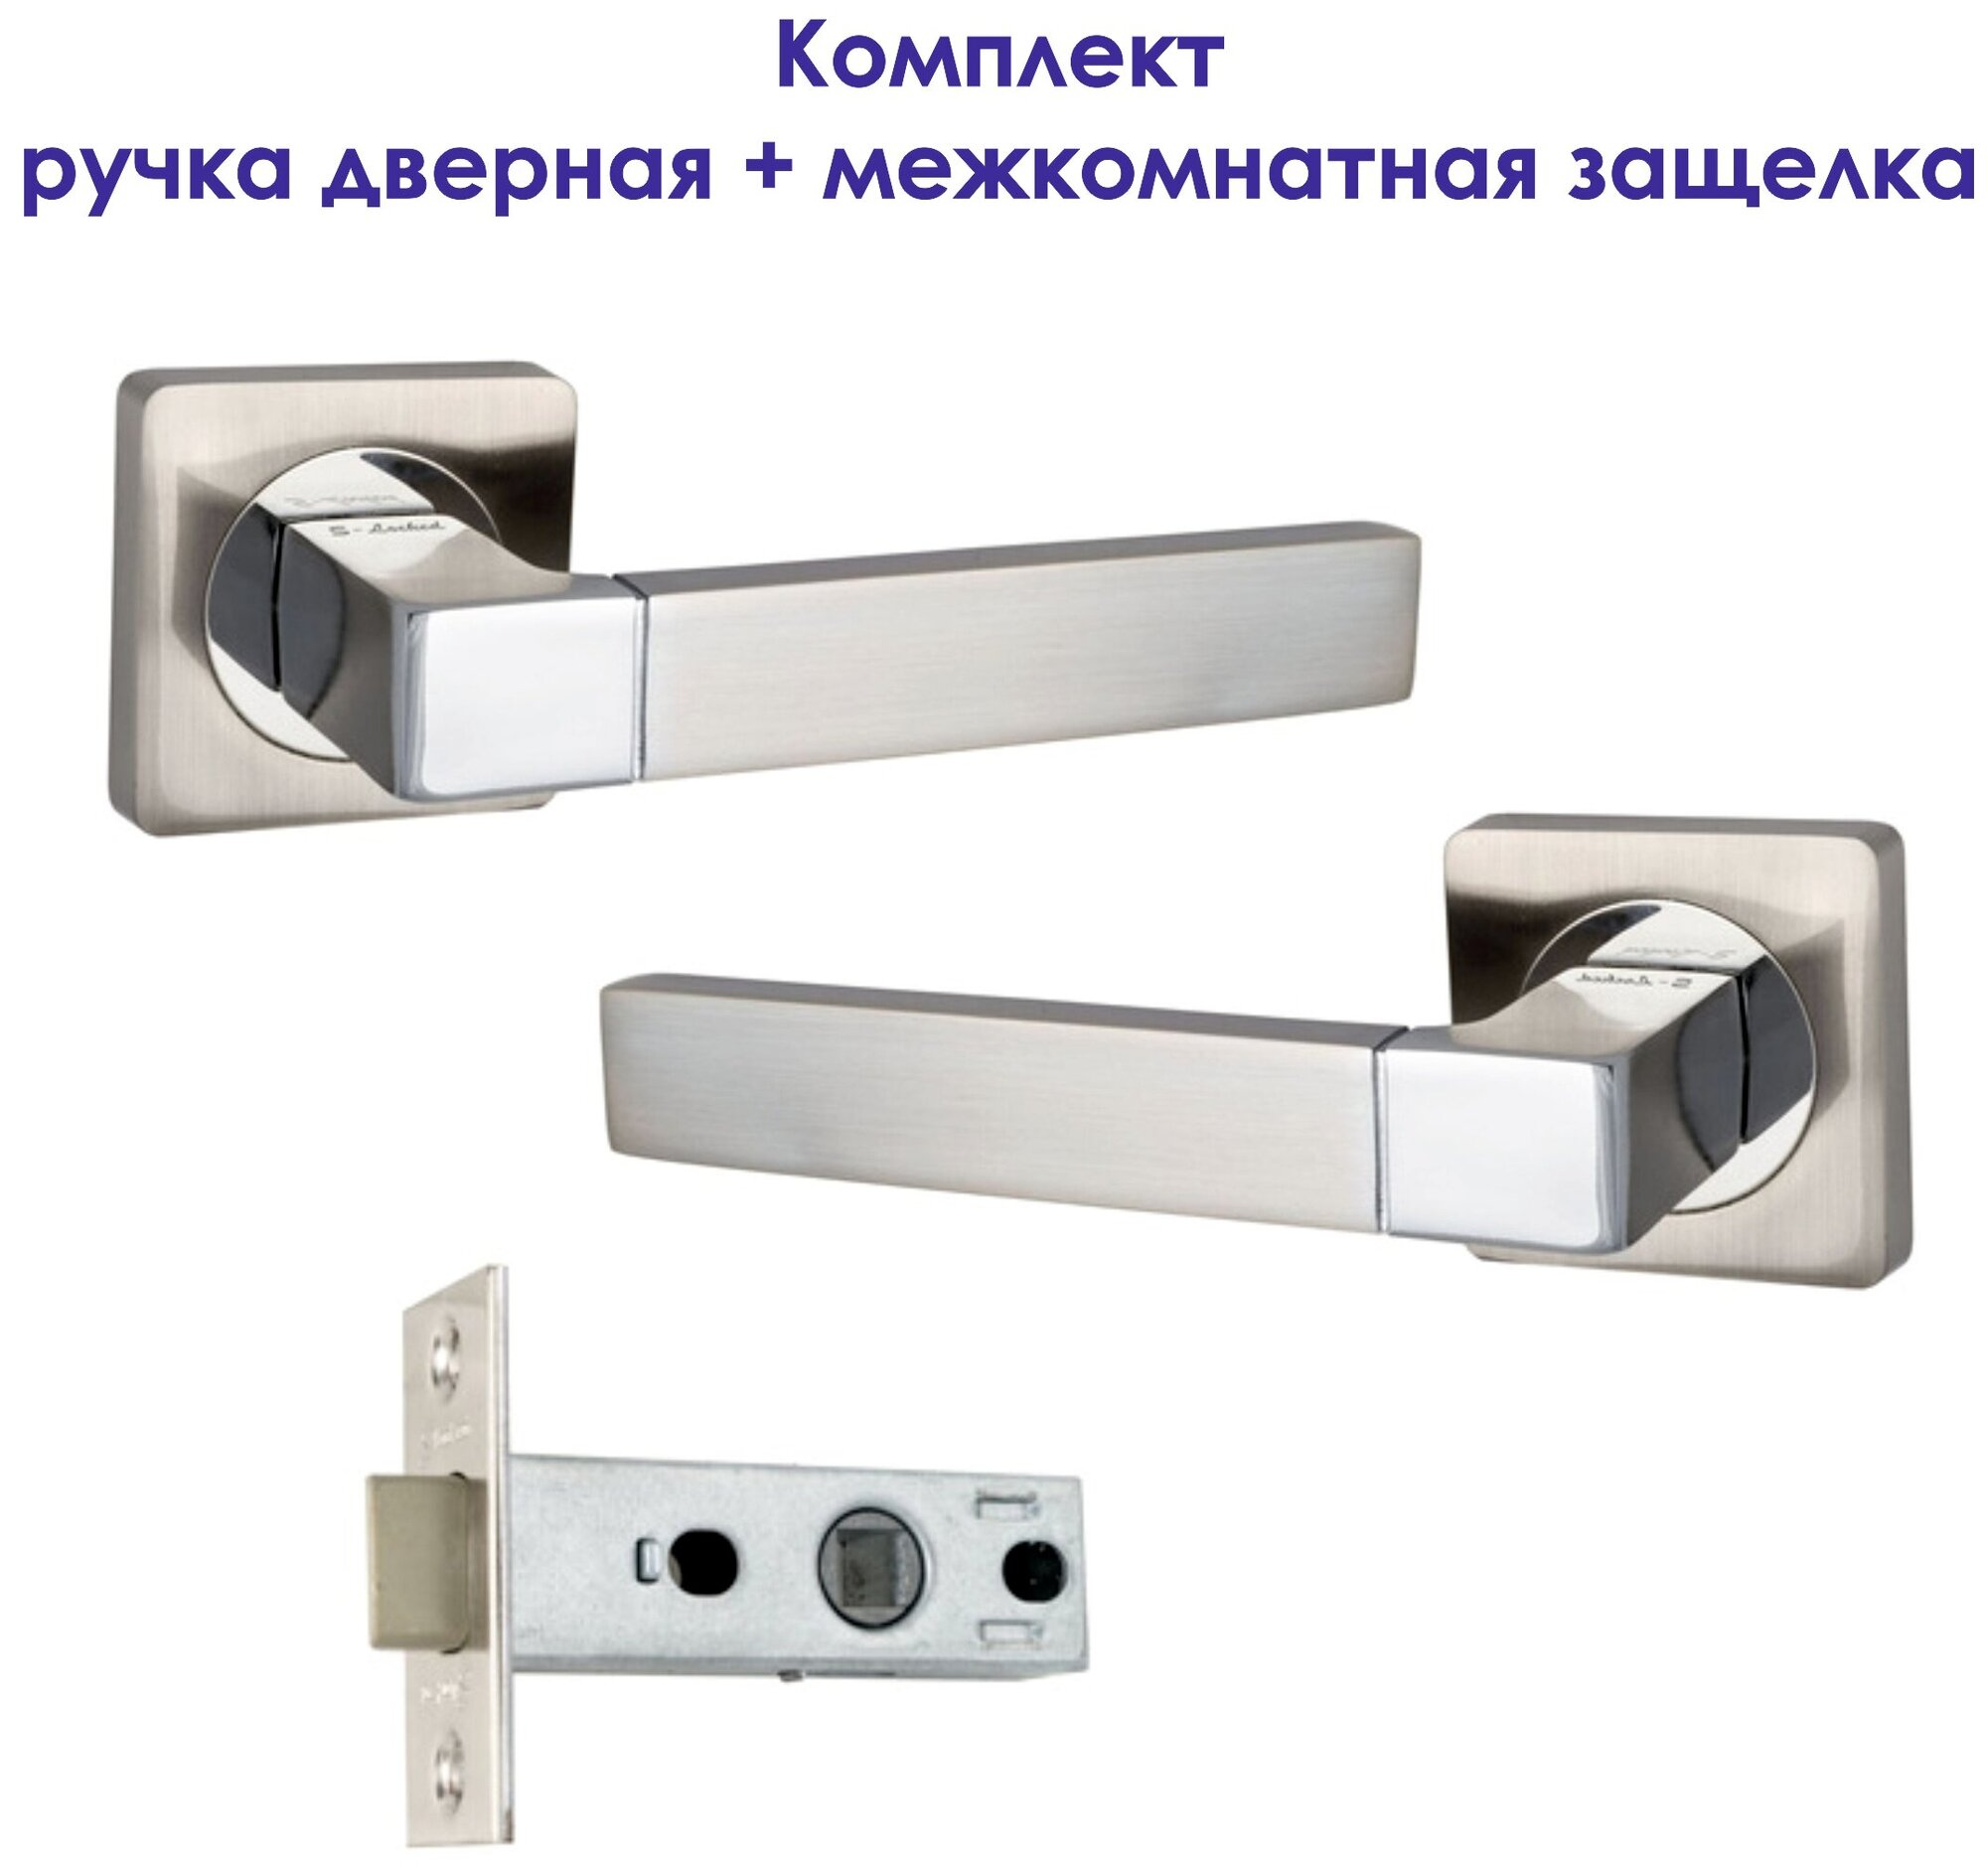 Комплект для межкомнатной двери Ручка дверная S-Locked А167 + Защелка /никель/хром